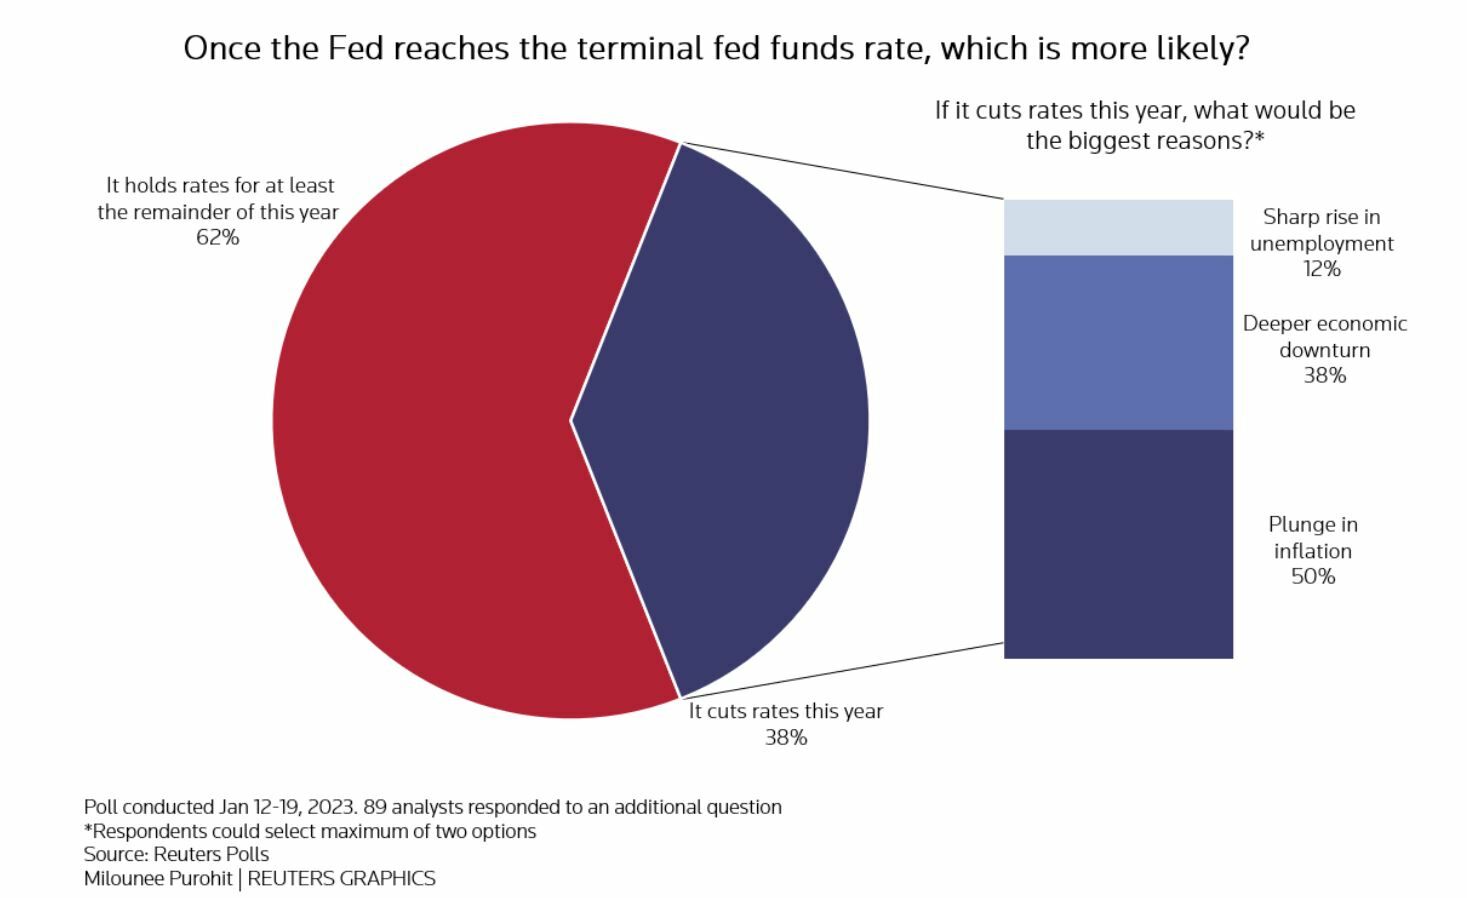 Posibilidades una vez que la Fed llegue al nivel decidido con los tipos, según Reuters